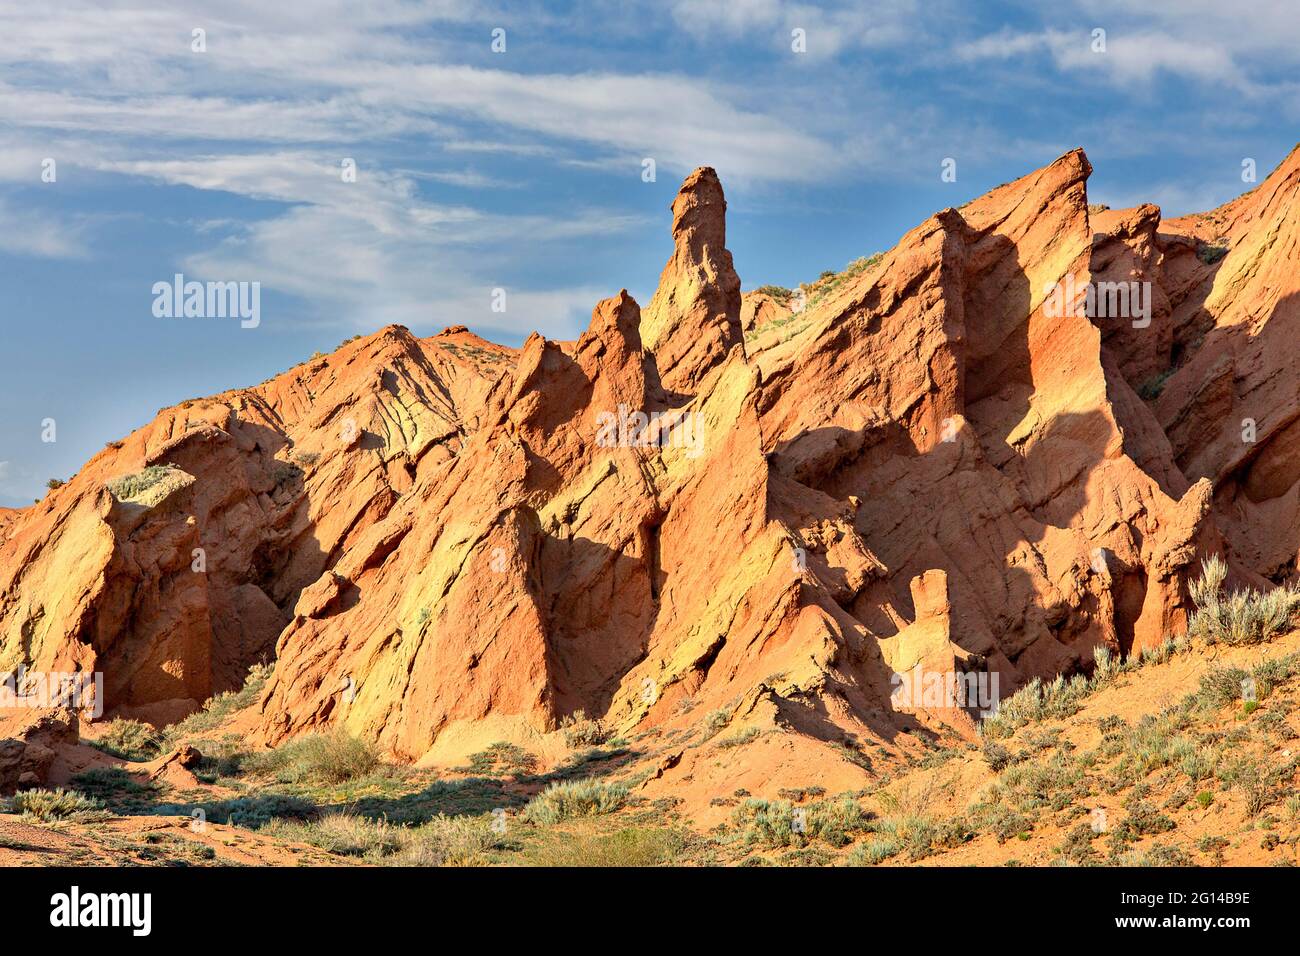 Formaciones rocosas rojas conocidas como el Castillo de Fairy Tale, en Kaji Say, Kirguistán Foto de stock